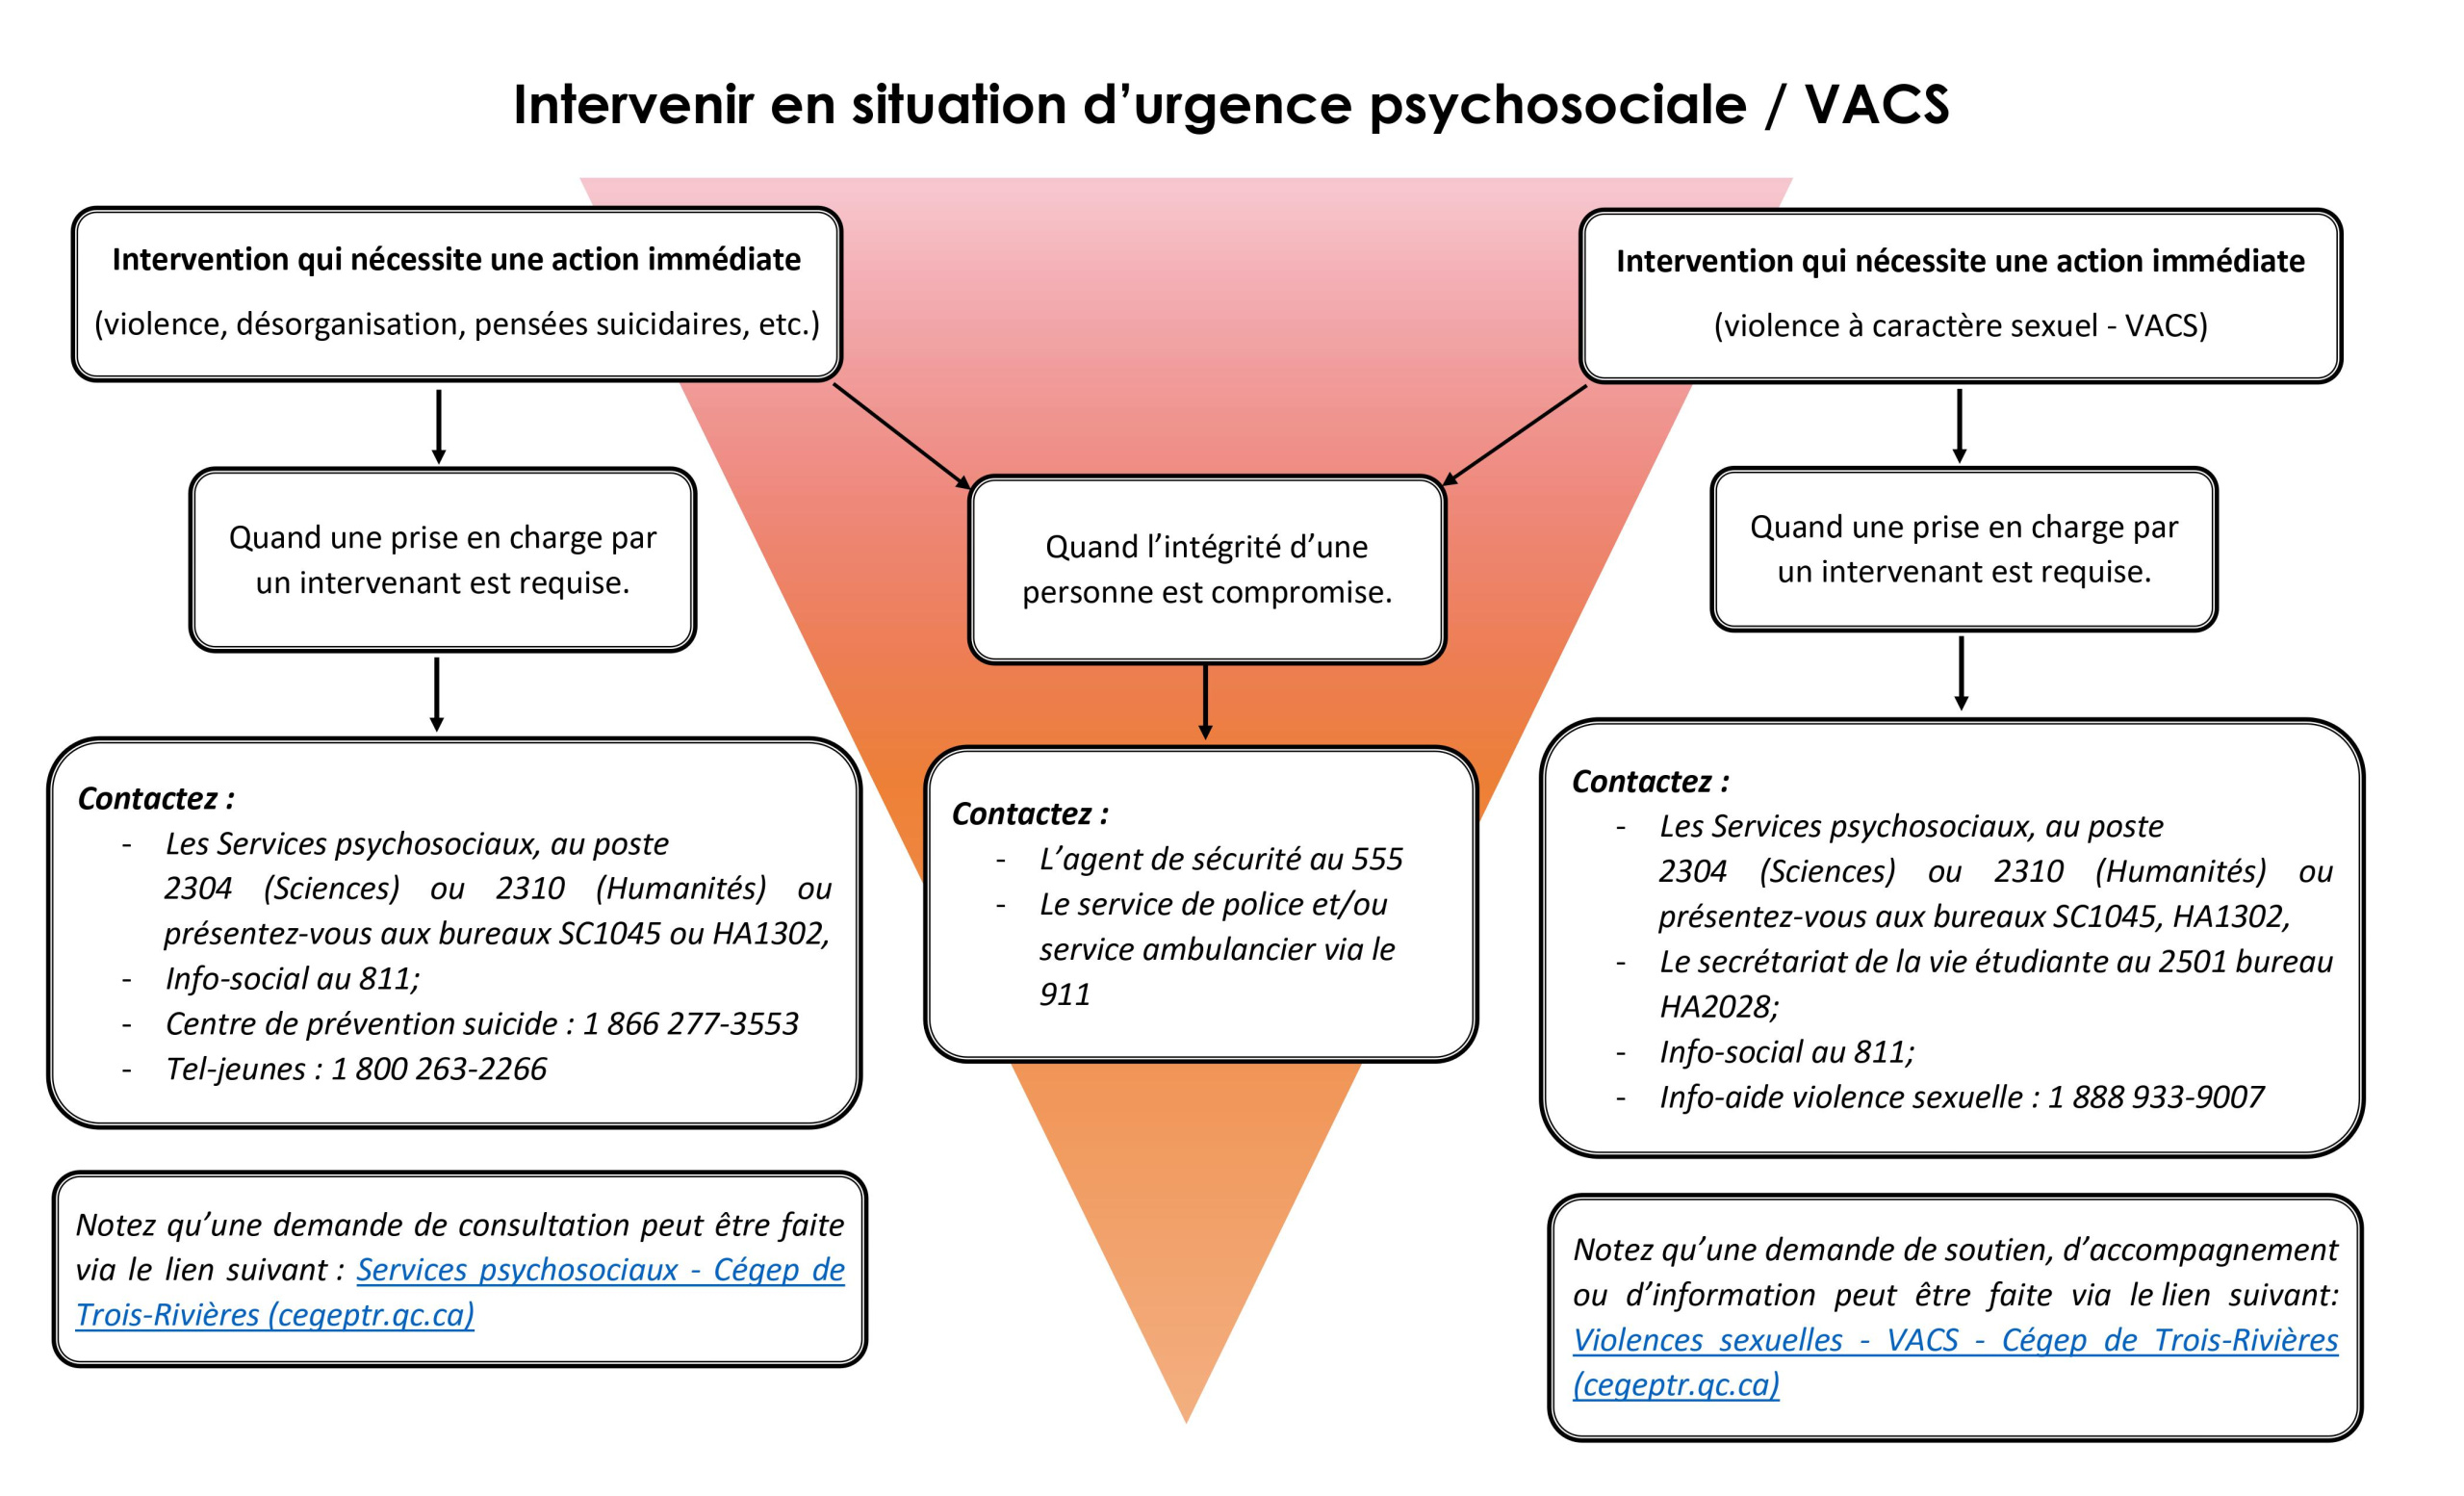 Intervention psychosociale et VACS d'urgence